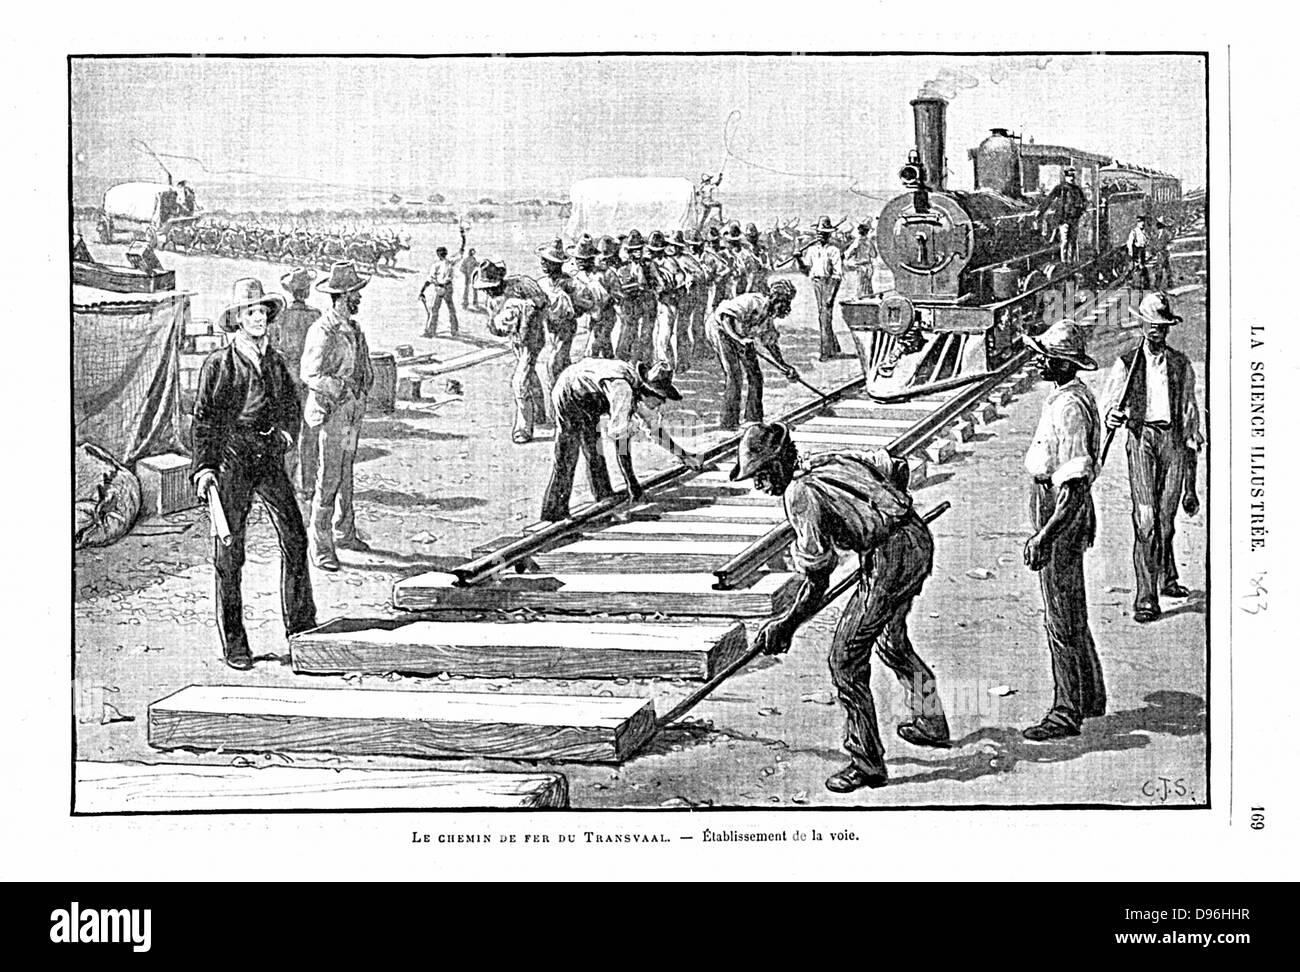 La posa di traversine e rotaie (modo permanente) sulla ferrovia Transvaal, Africa. Illustrazione pubblicato Parigi 1893 Foto Stock